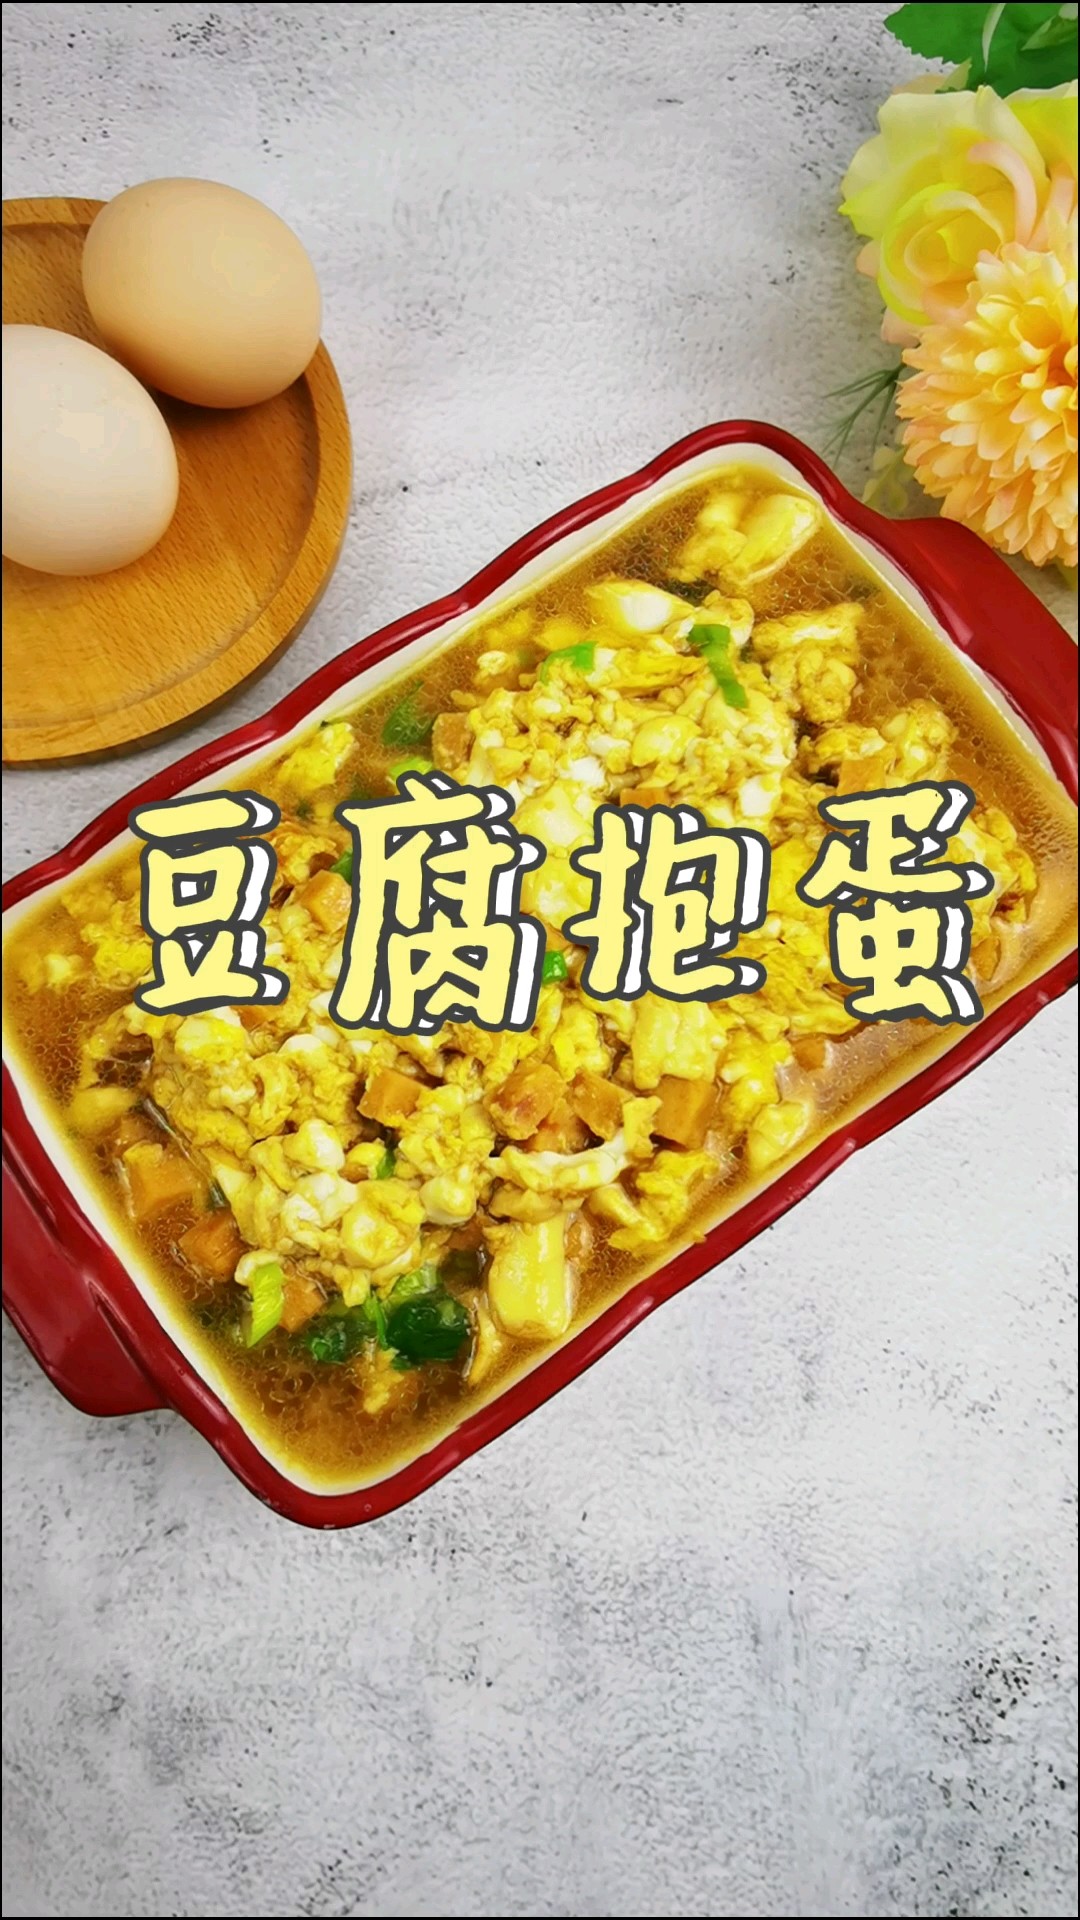 The Fairy Way to Eat Tofu and Eggs-tofu Hugs Eggs, A Tender Bite recipe